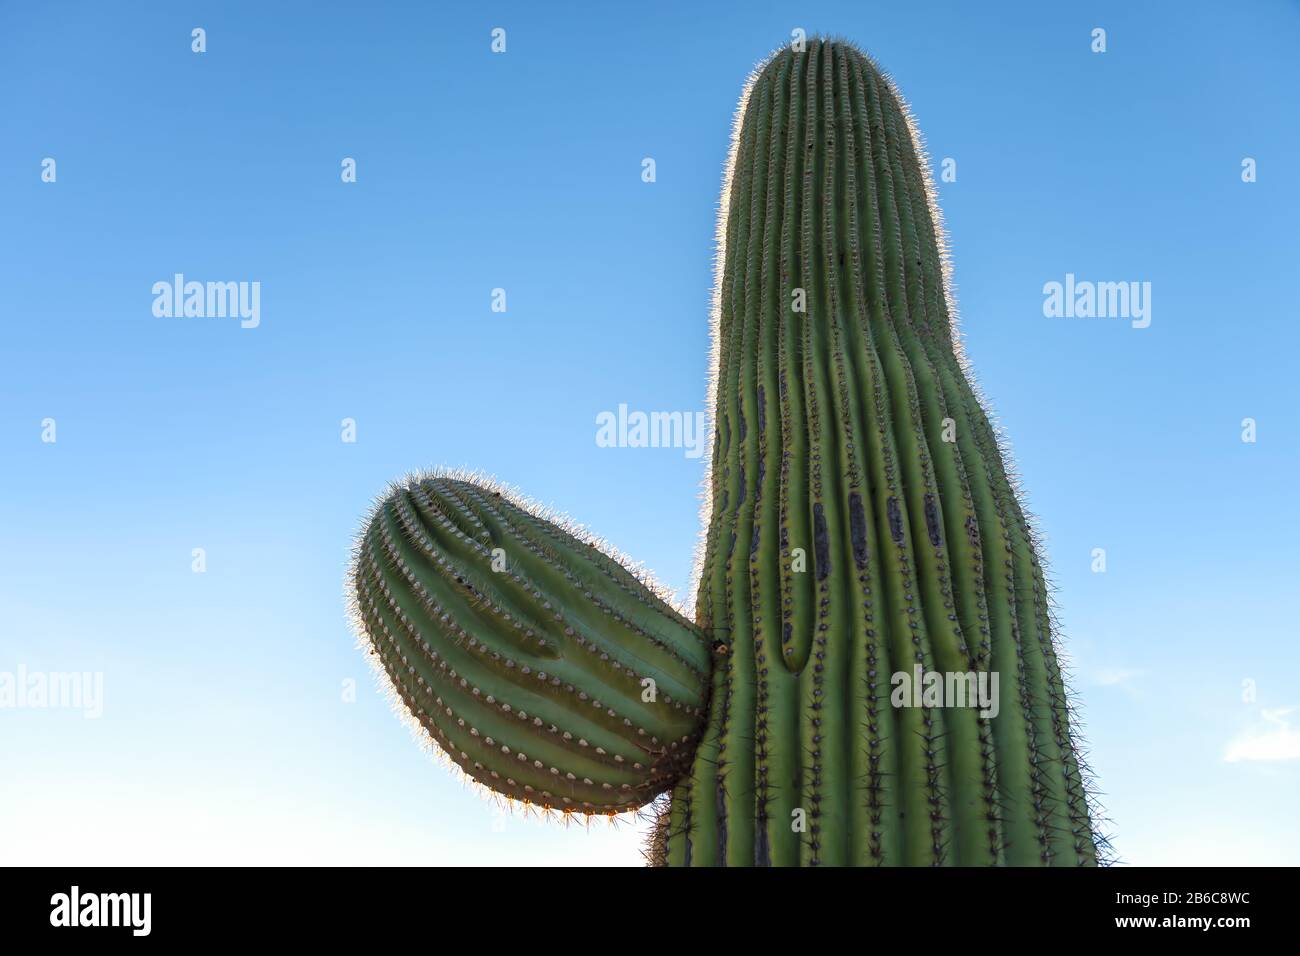 Close up at a saguaro cactus (Carnegiea gigantea), Saguaro National Park, Arizona, USA. Stock Photo